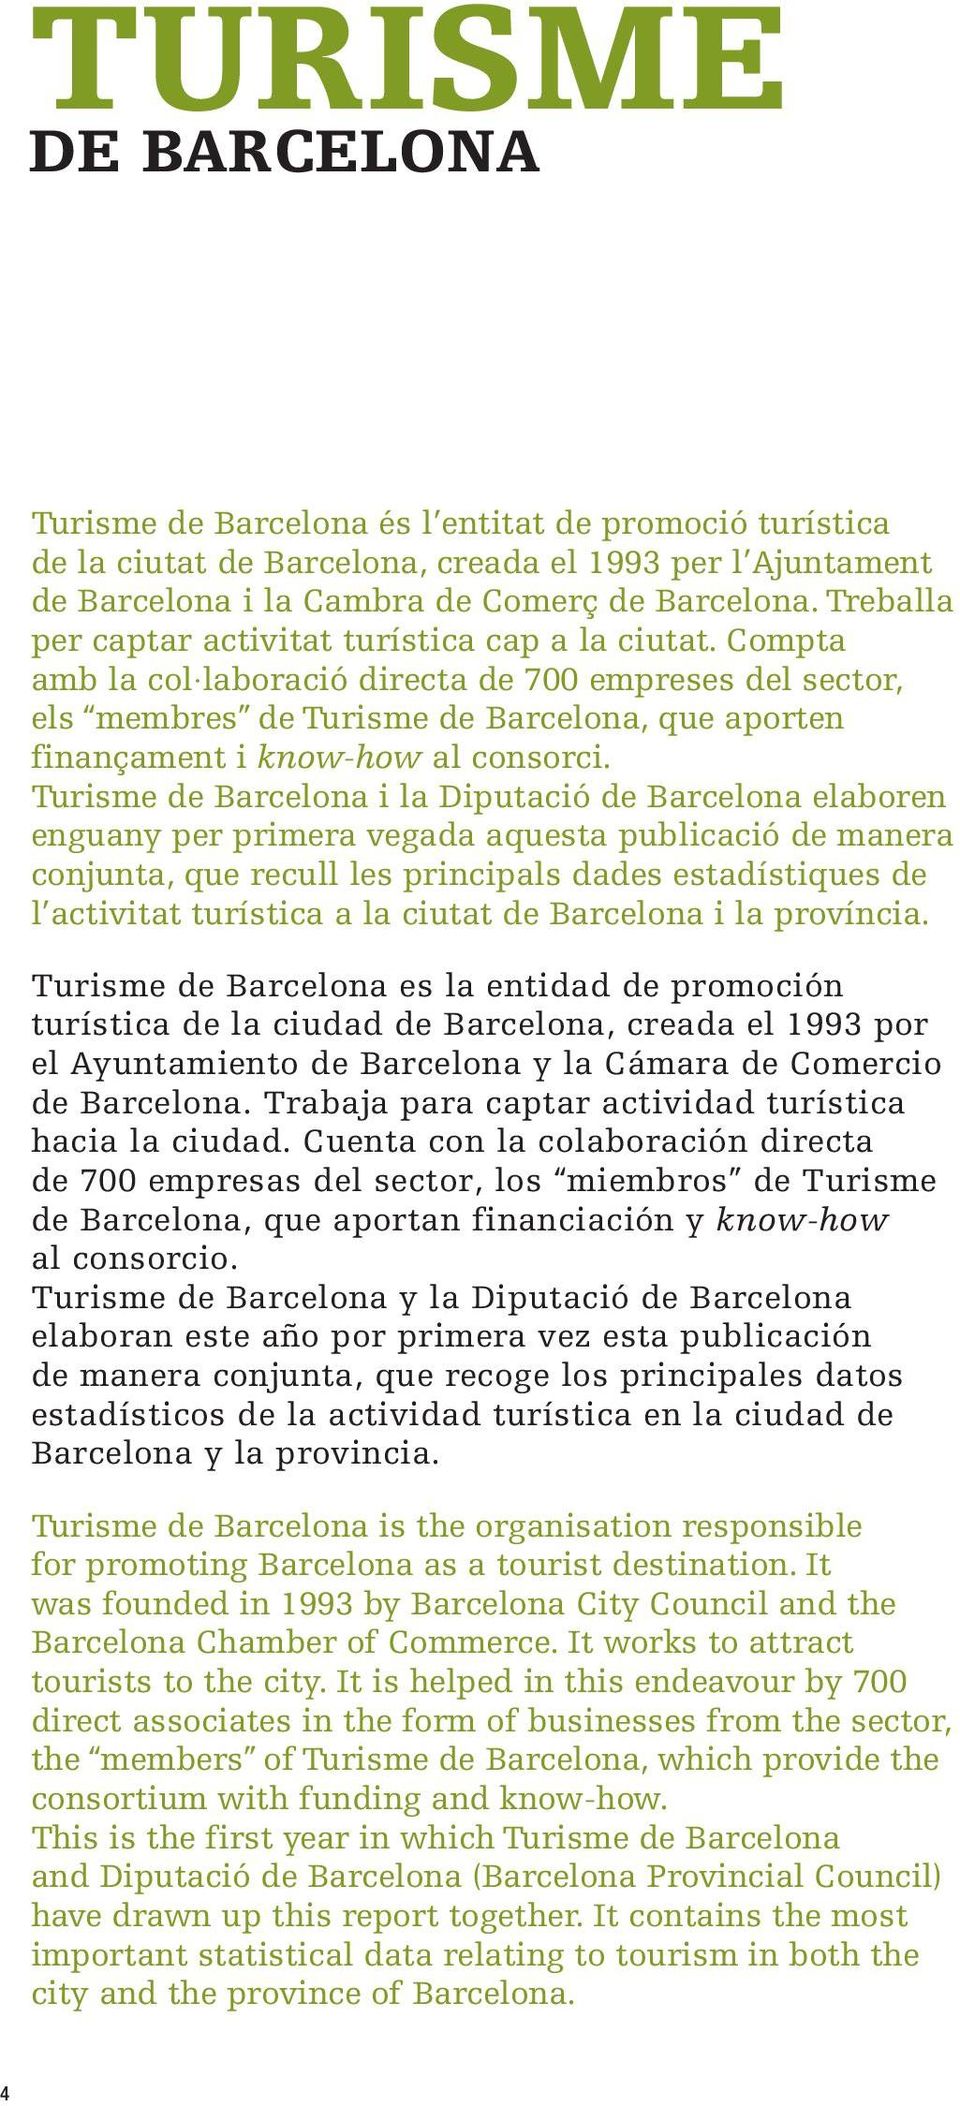 Compta amb la col laboració directa de 700 empreses del sector, els membres de Turisme de Barcelona, que aporten finançament i know-how al consorci.